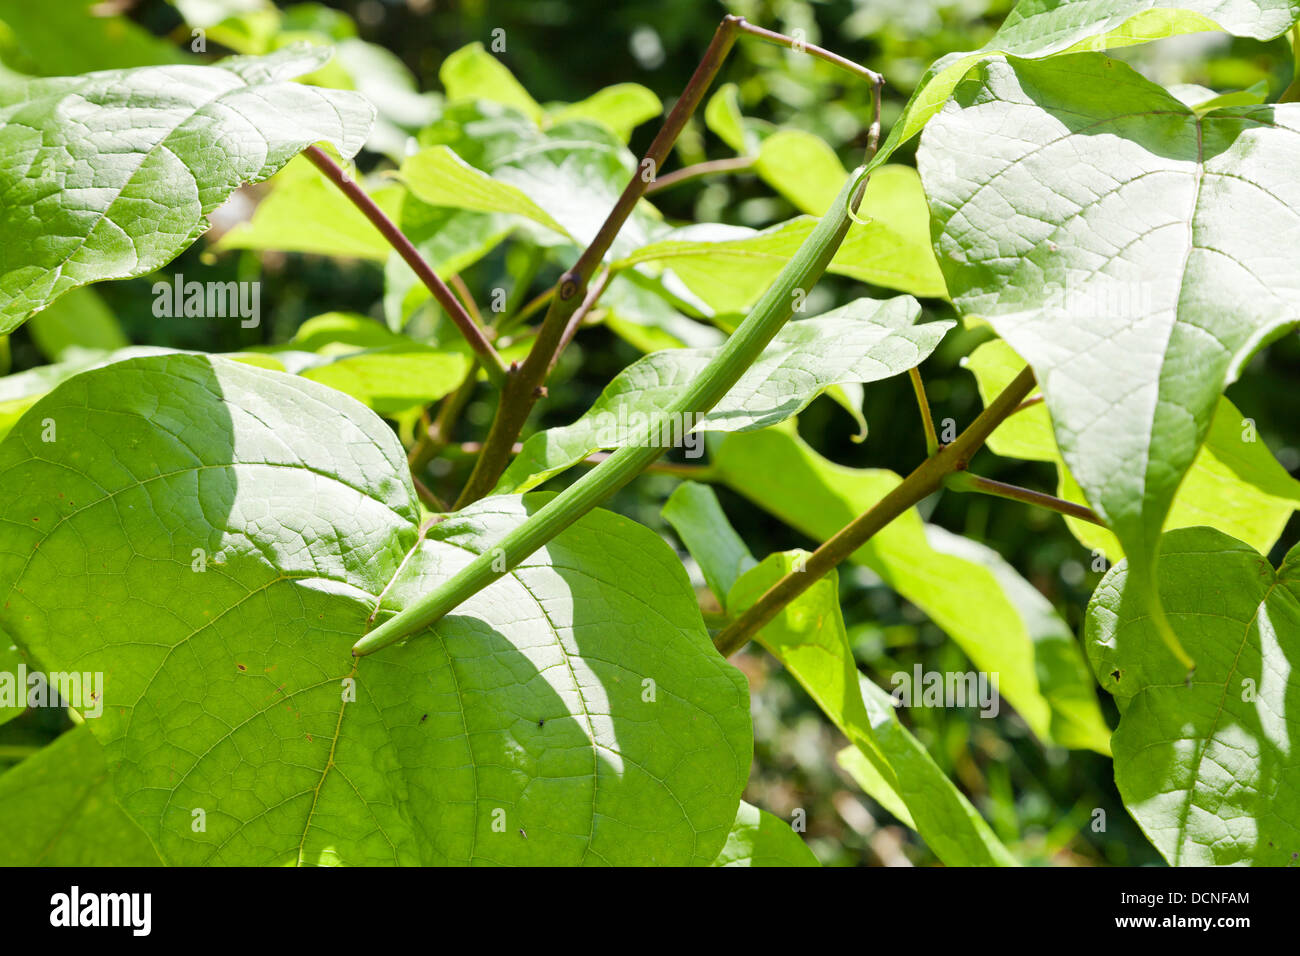 Beanpod verdes y grandes hojas de árbol Catalpa cerrar Foto de stock